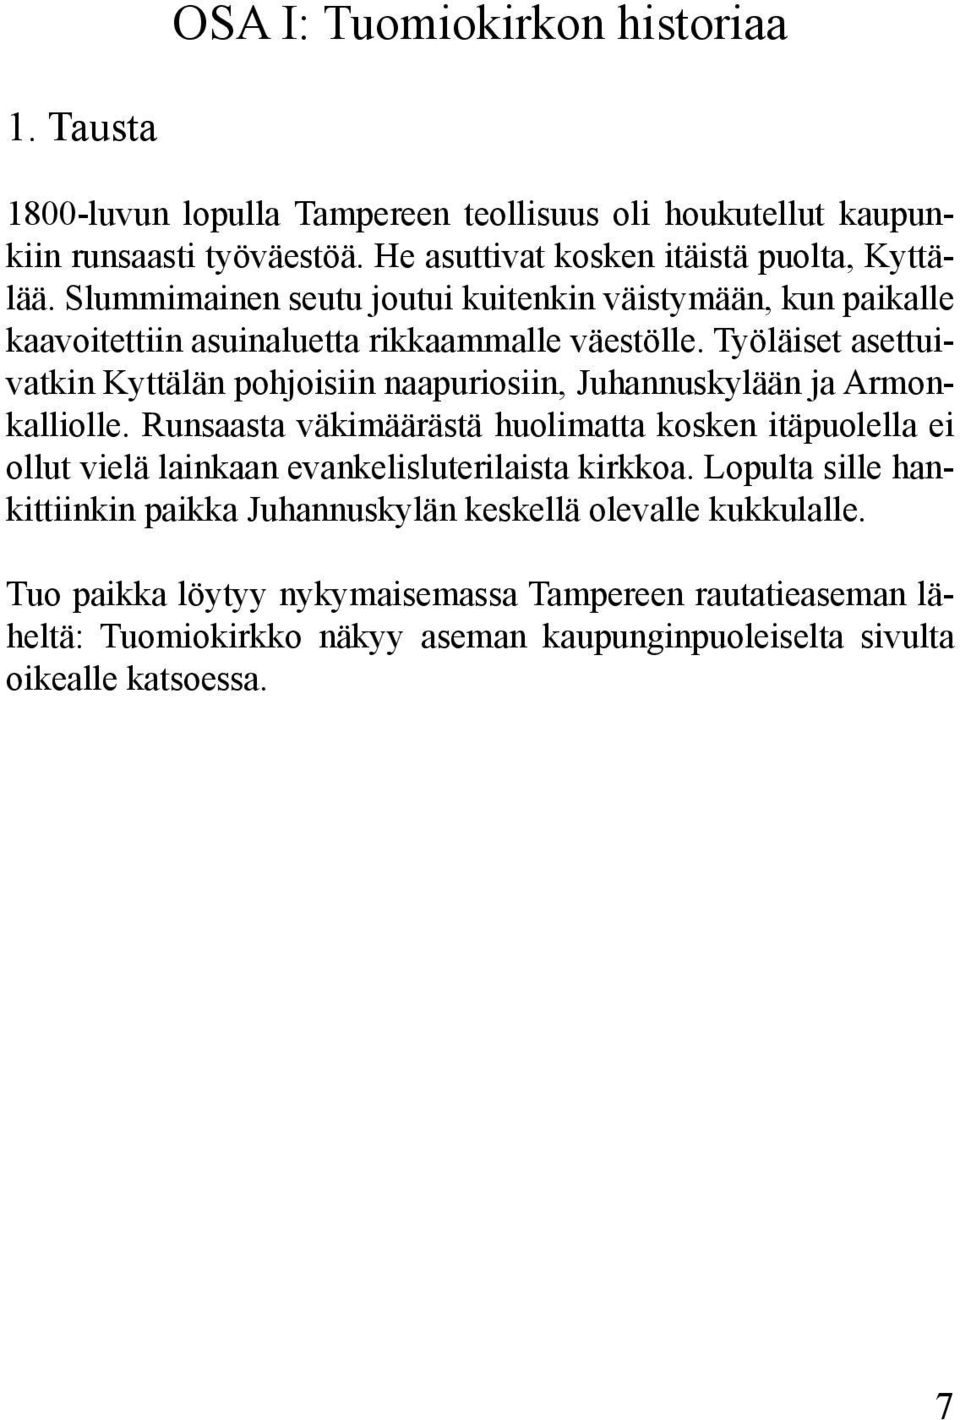 Työläiset asettuivatkin Kyttälän pohjoisiin naapuriosiin, Juhannuskylään ja Armonkalliolle.